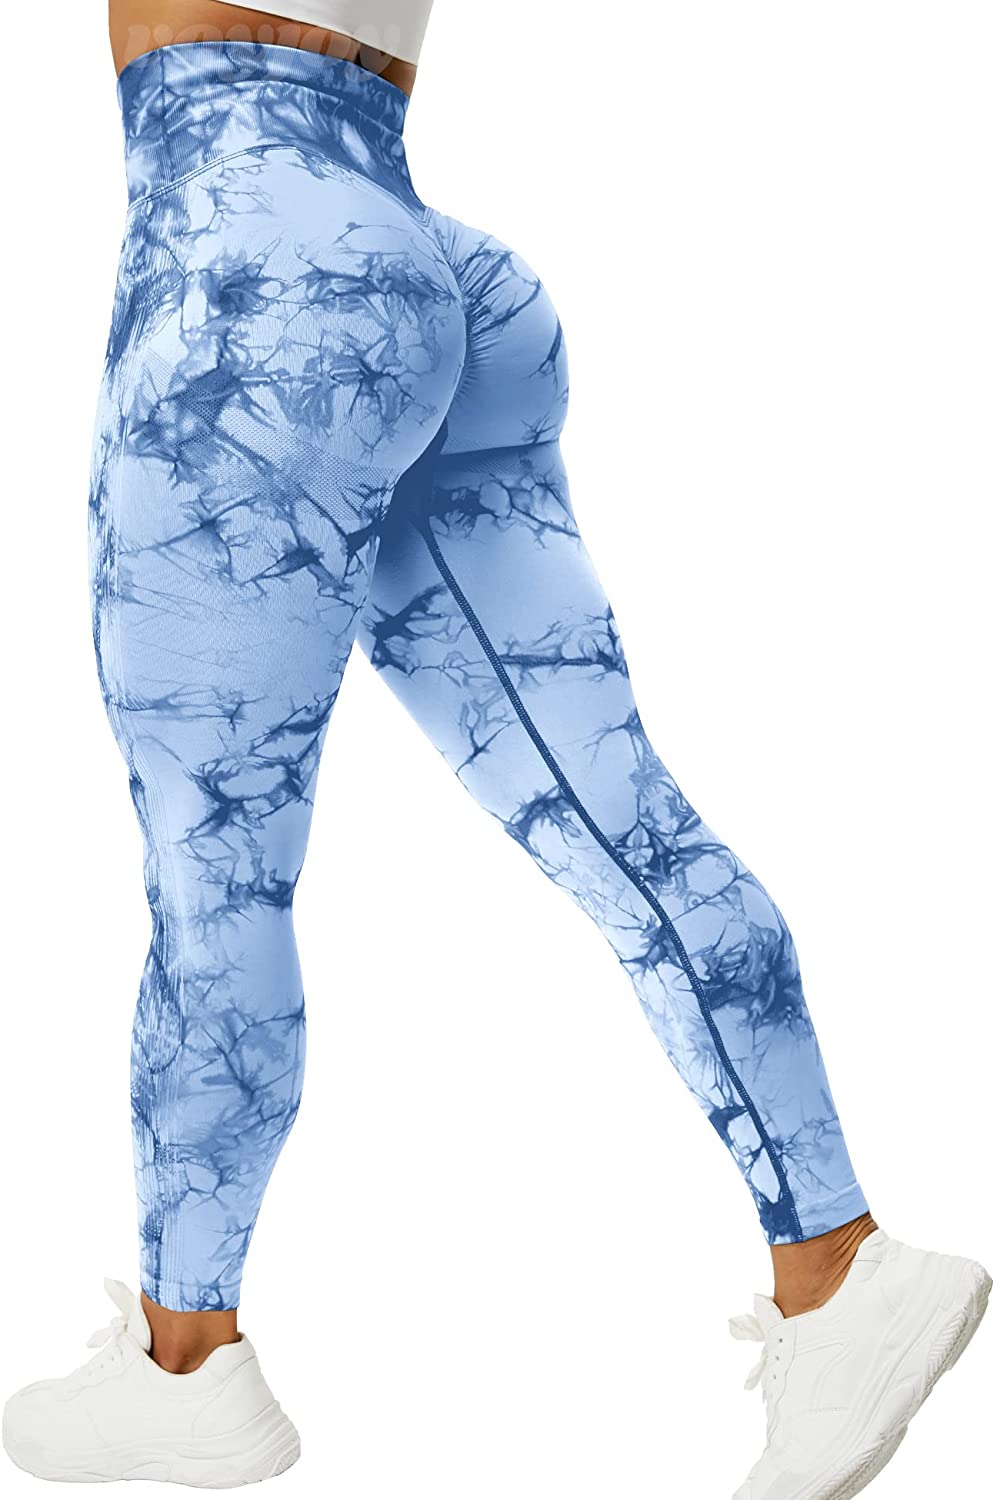 Women 3D Print Bowknot High Waist Yoga Bum Scrunch Leggings - ShopperBoard